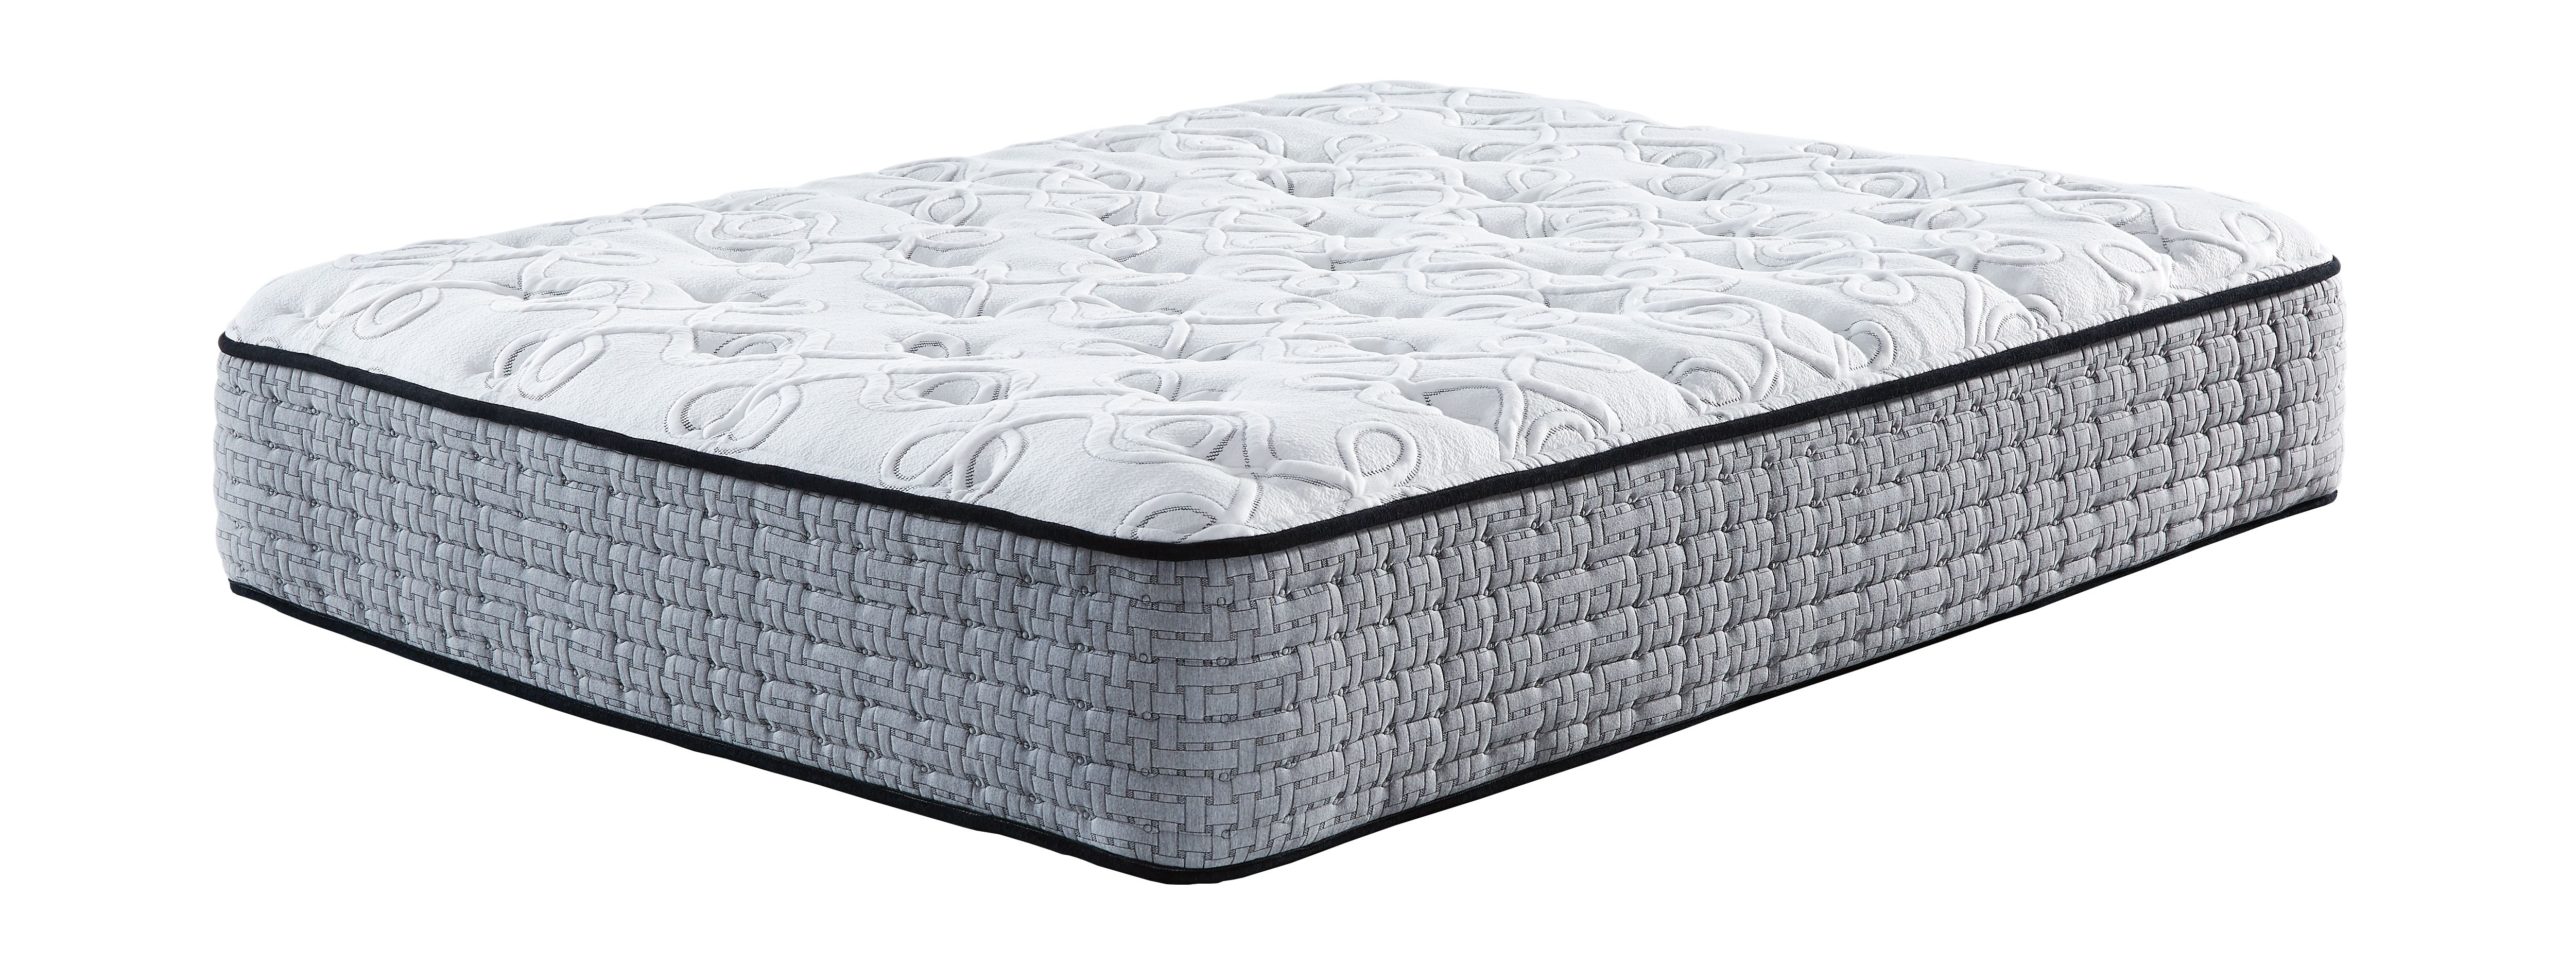 mt rogers pillow top mattress